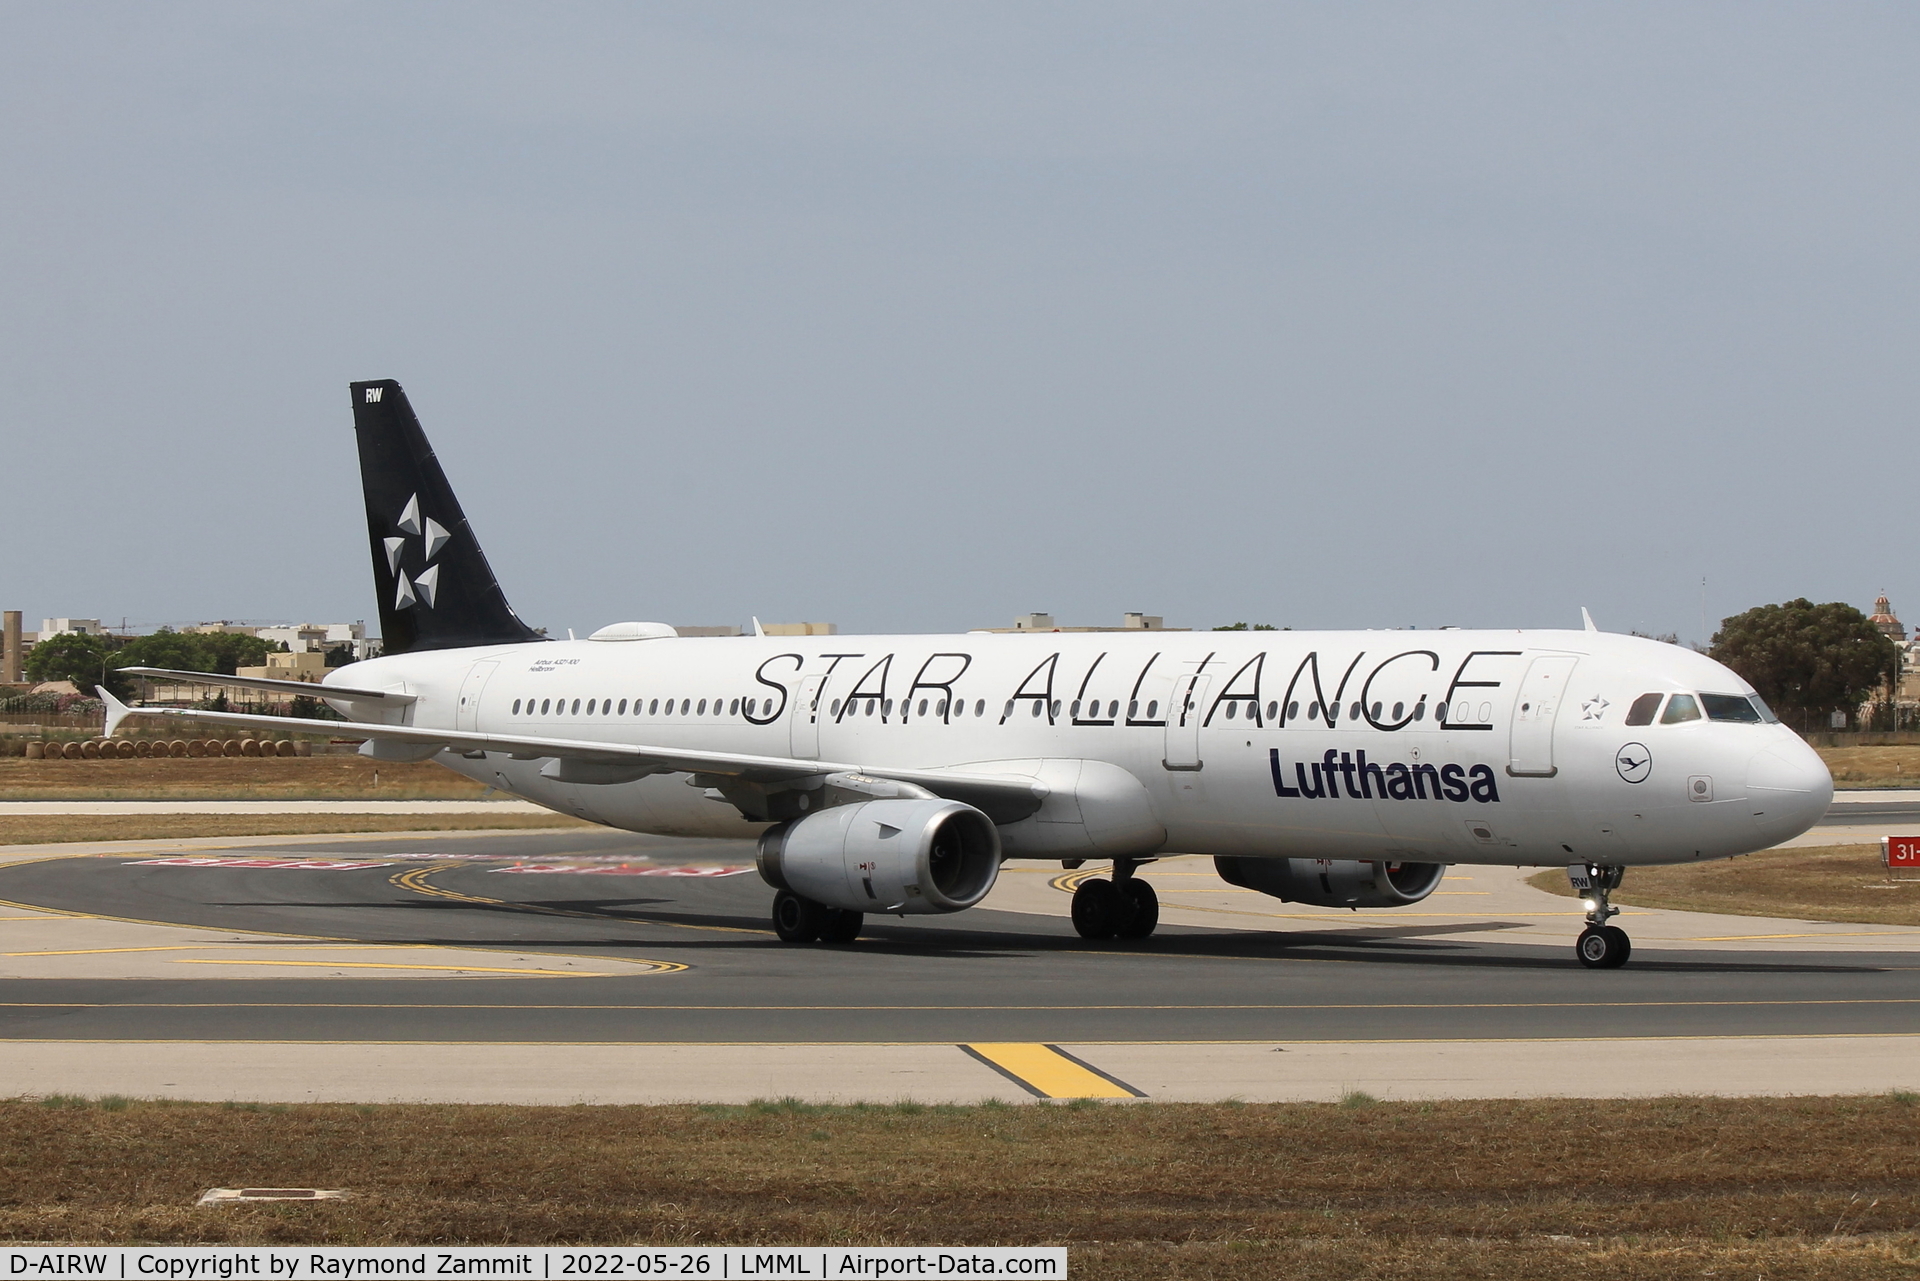 D-AIRW, 1997 Airbus A321-131 C/N 0699, A321 D-AIRW Star Alliance Lufthansa